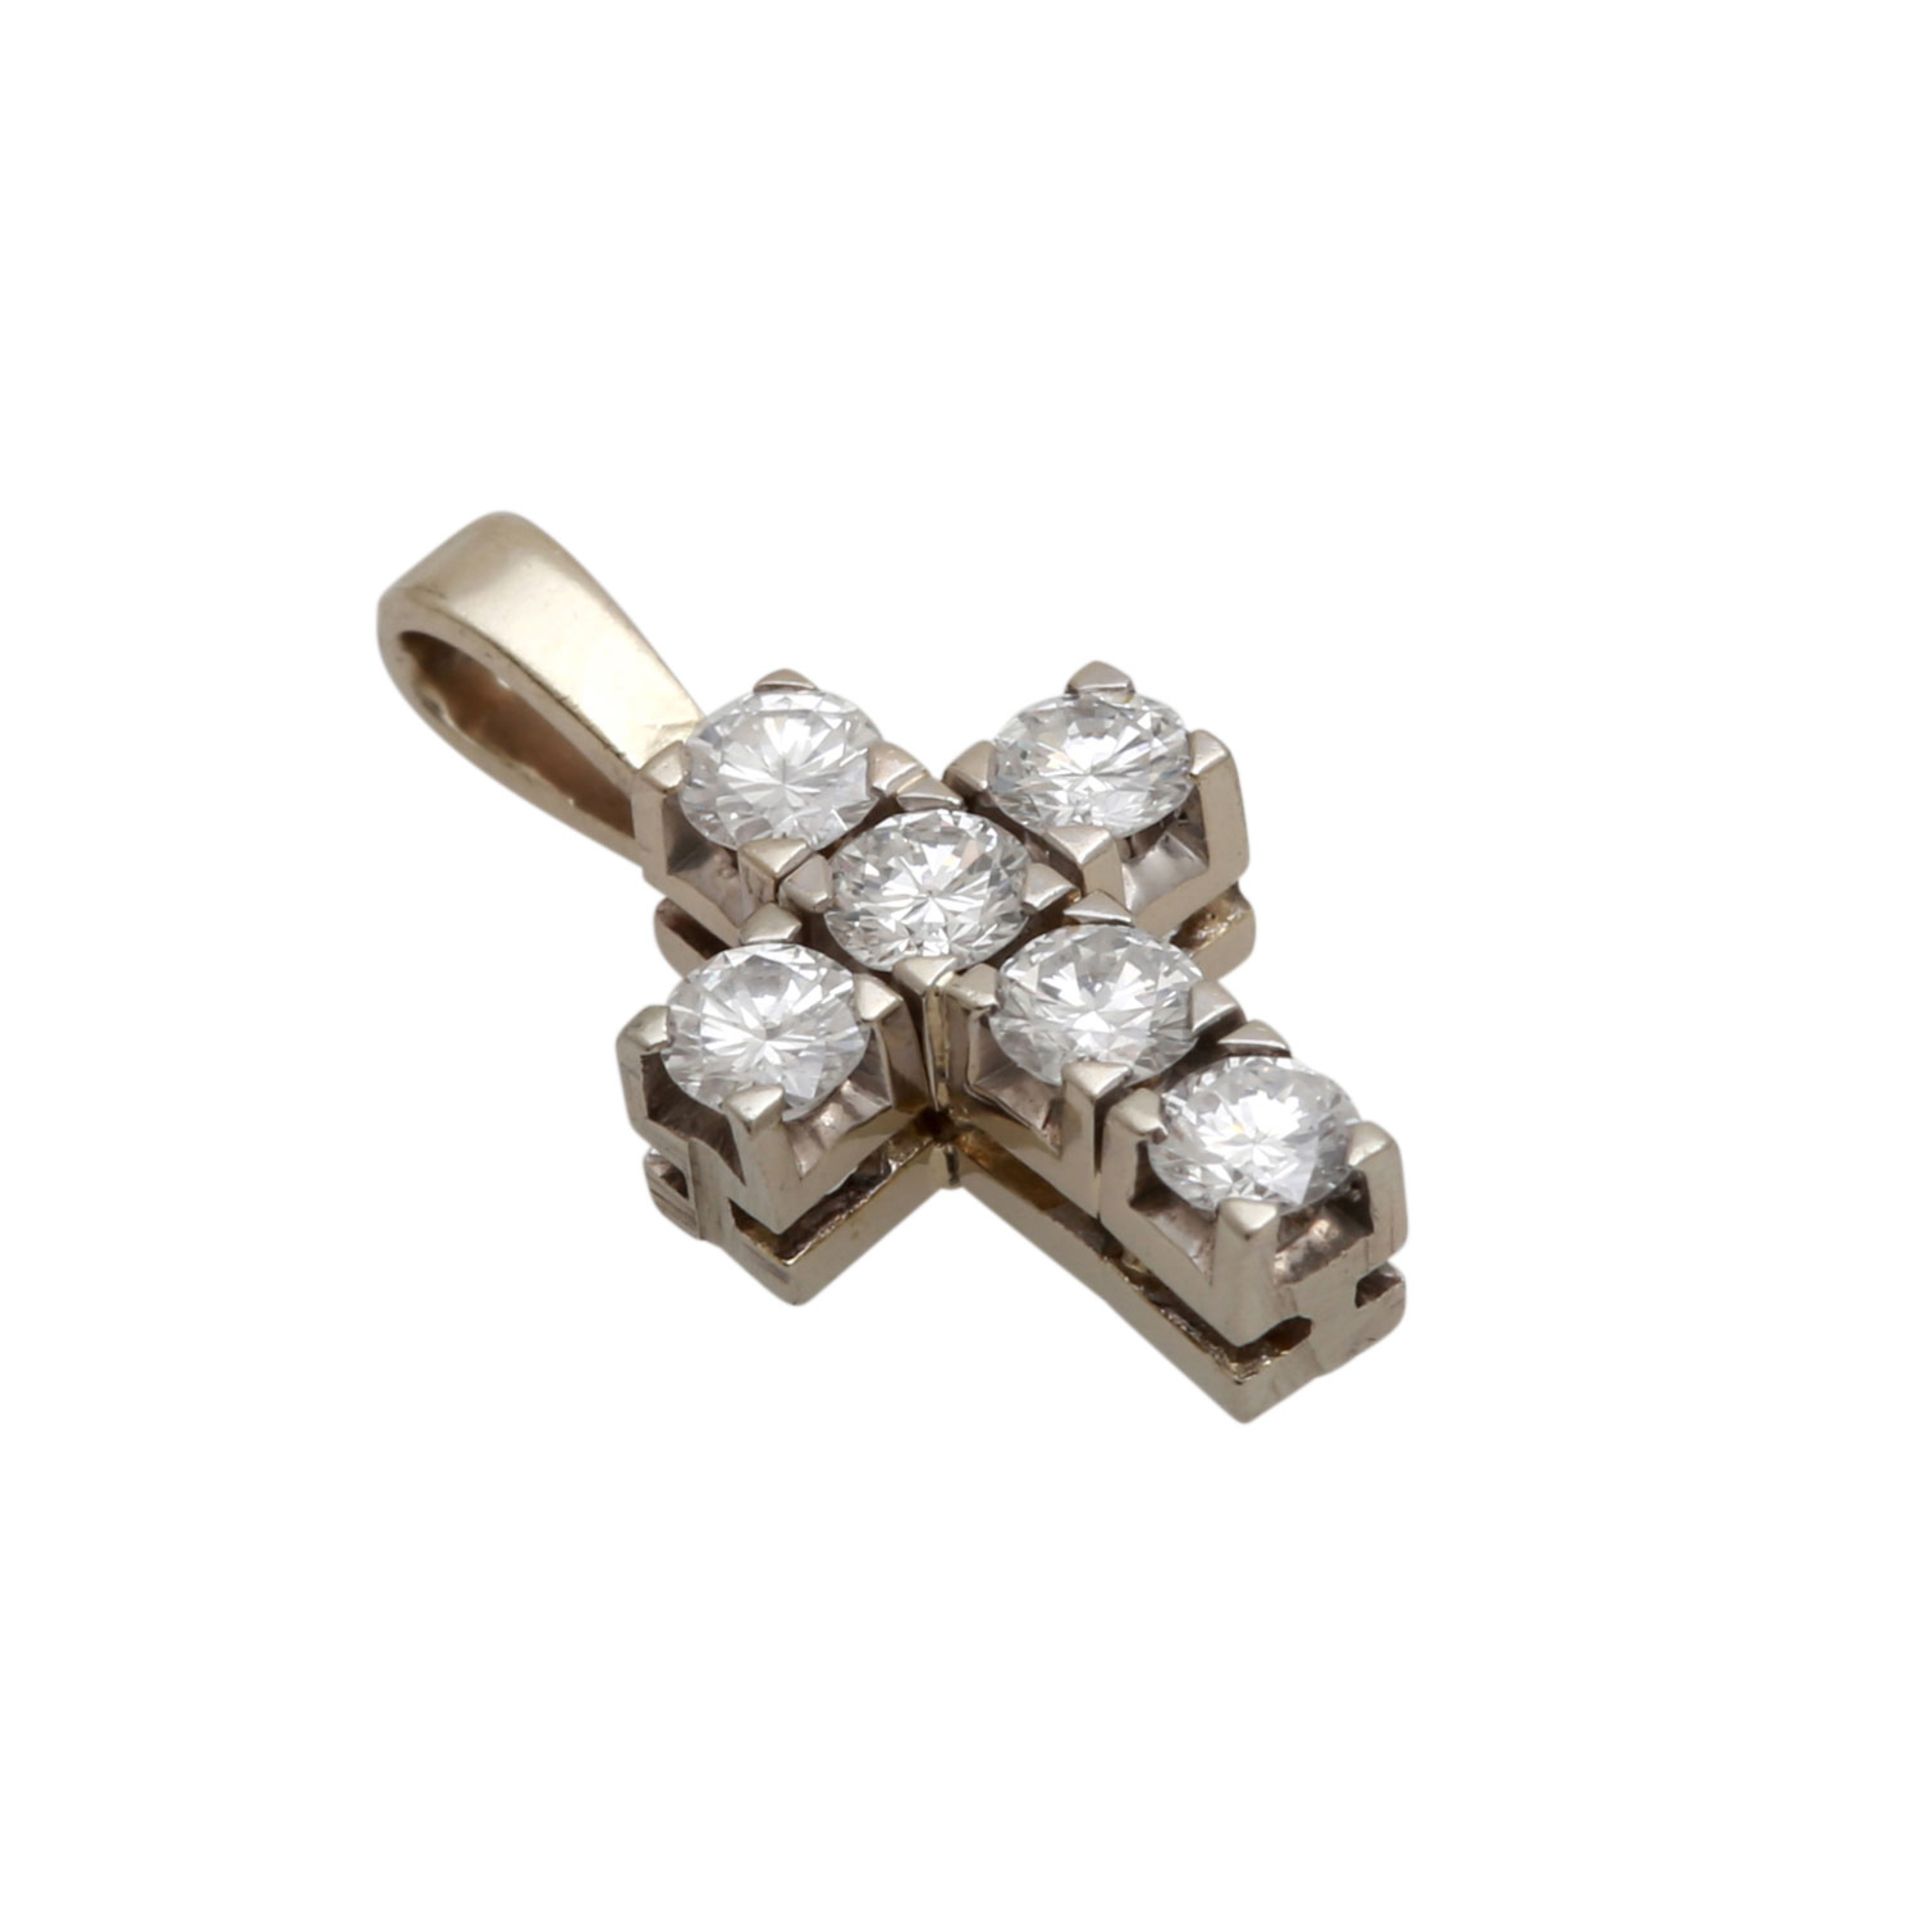 4 Kreuzanhänger mit Diamantbesatz davon 1 mittleres Kreuz in WG 18K mit 24 Brillanten zus. ca. 0,7 - Bild 5 aus 5